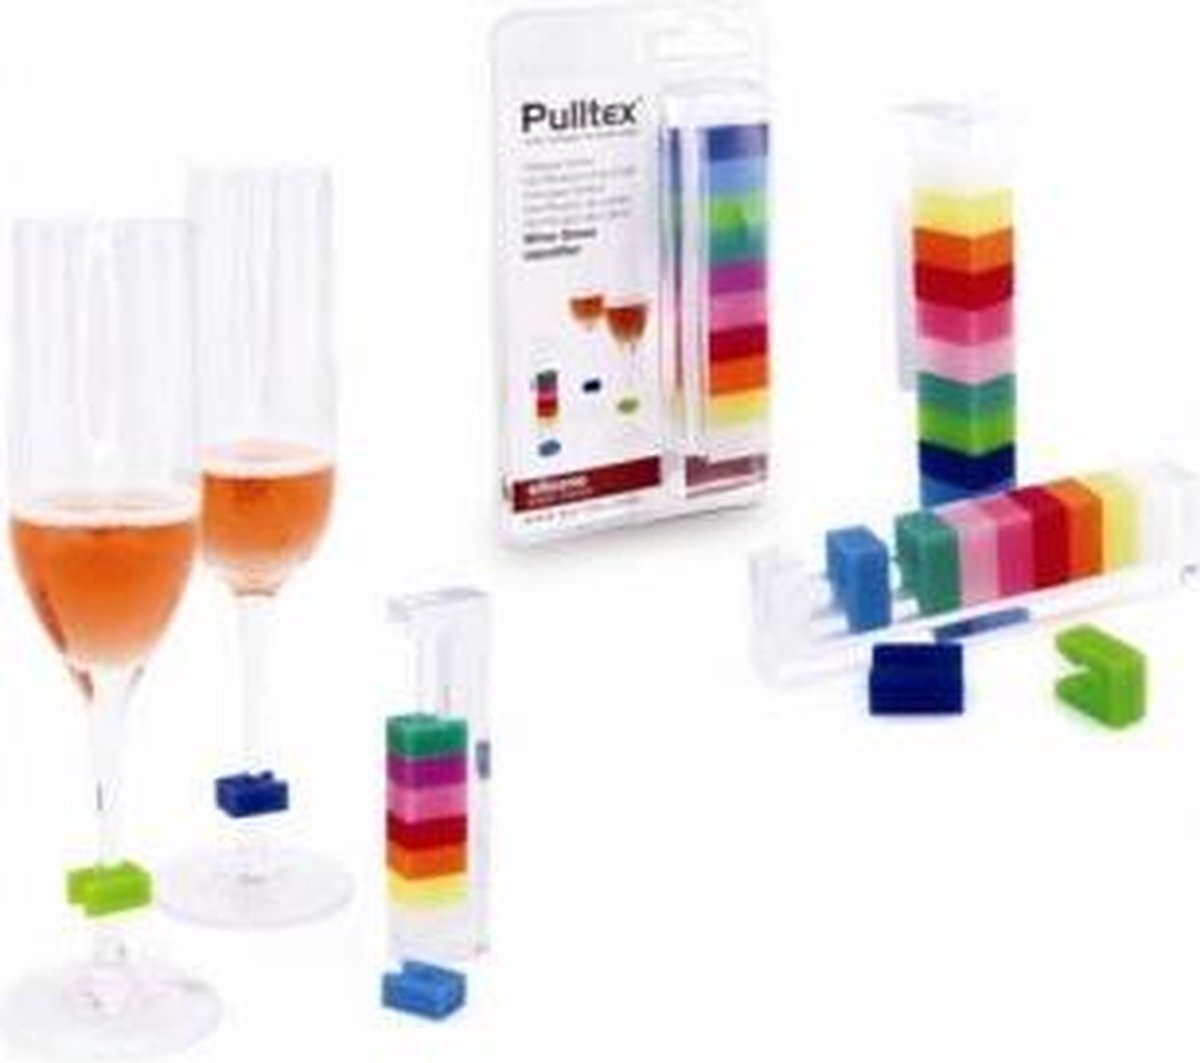 Pulltex Wijnglas herkenner Identity vierkant